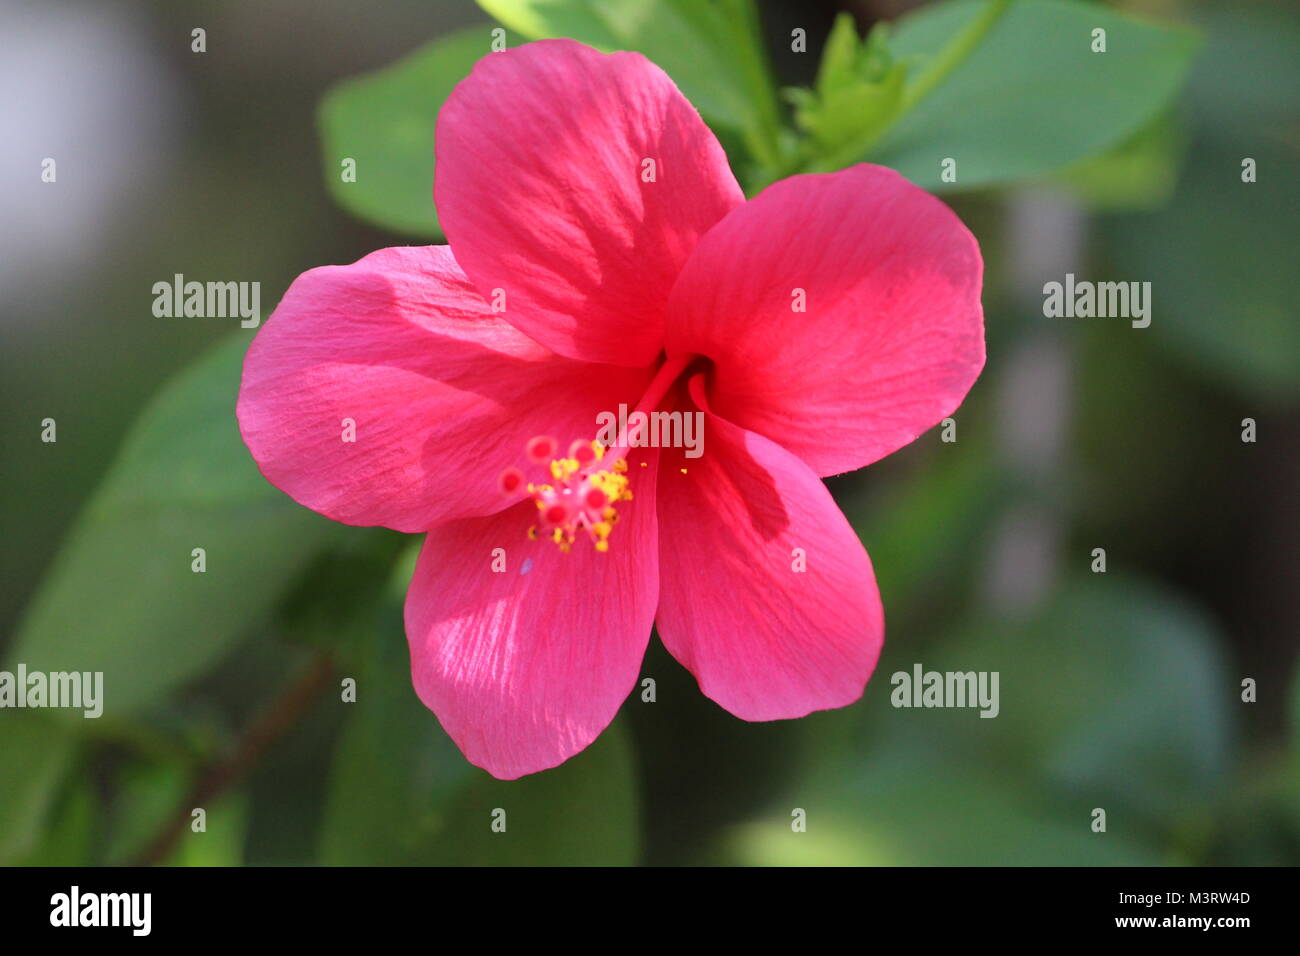 Fleur d'hibiscus fleur rose C'est super cool que fond vert feuilles chaud rose fleur flore bonne combinaison de grains de pollen crampons Banque D'Images